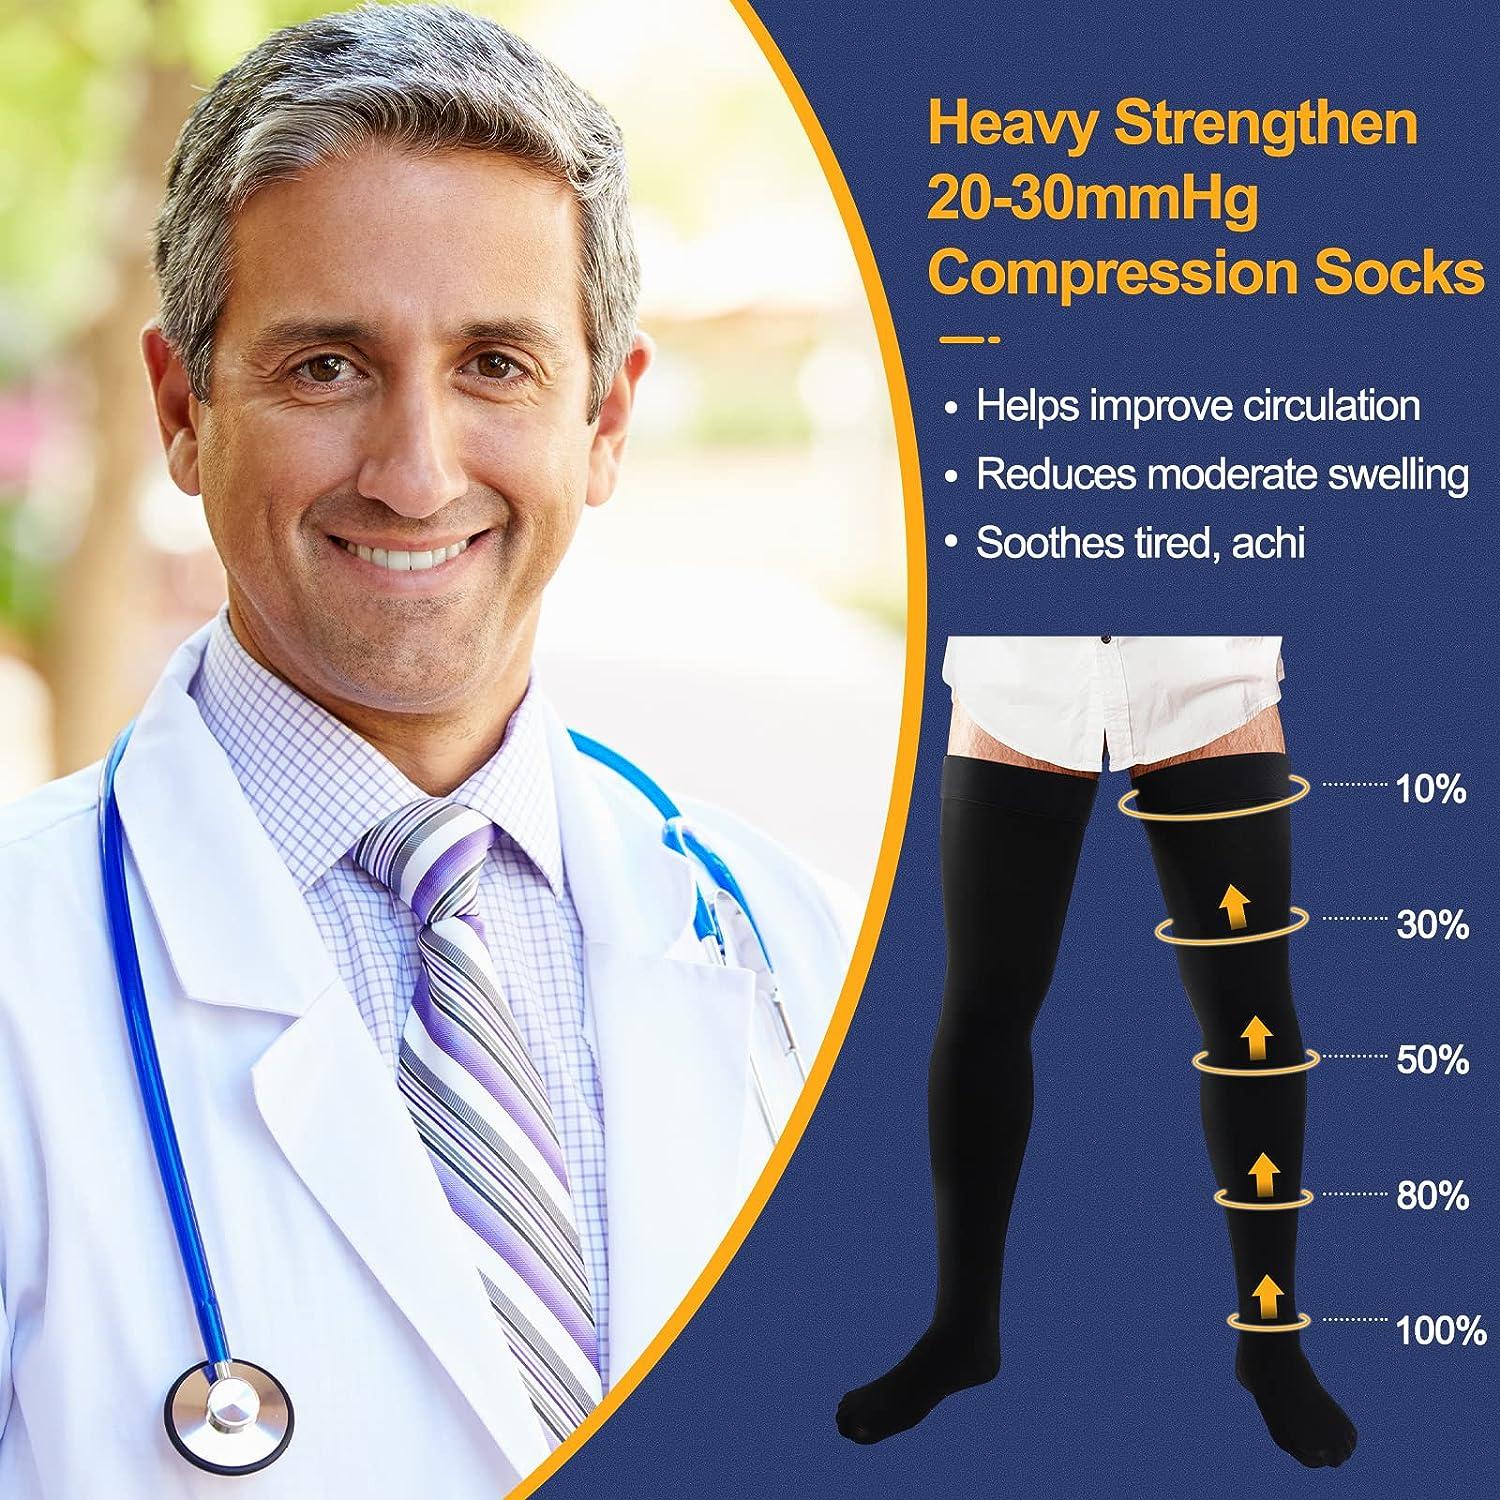 Thigh high compression socks 20-30 mmGh